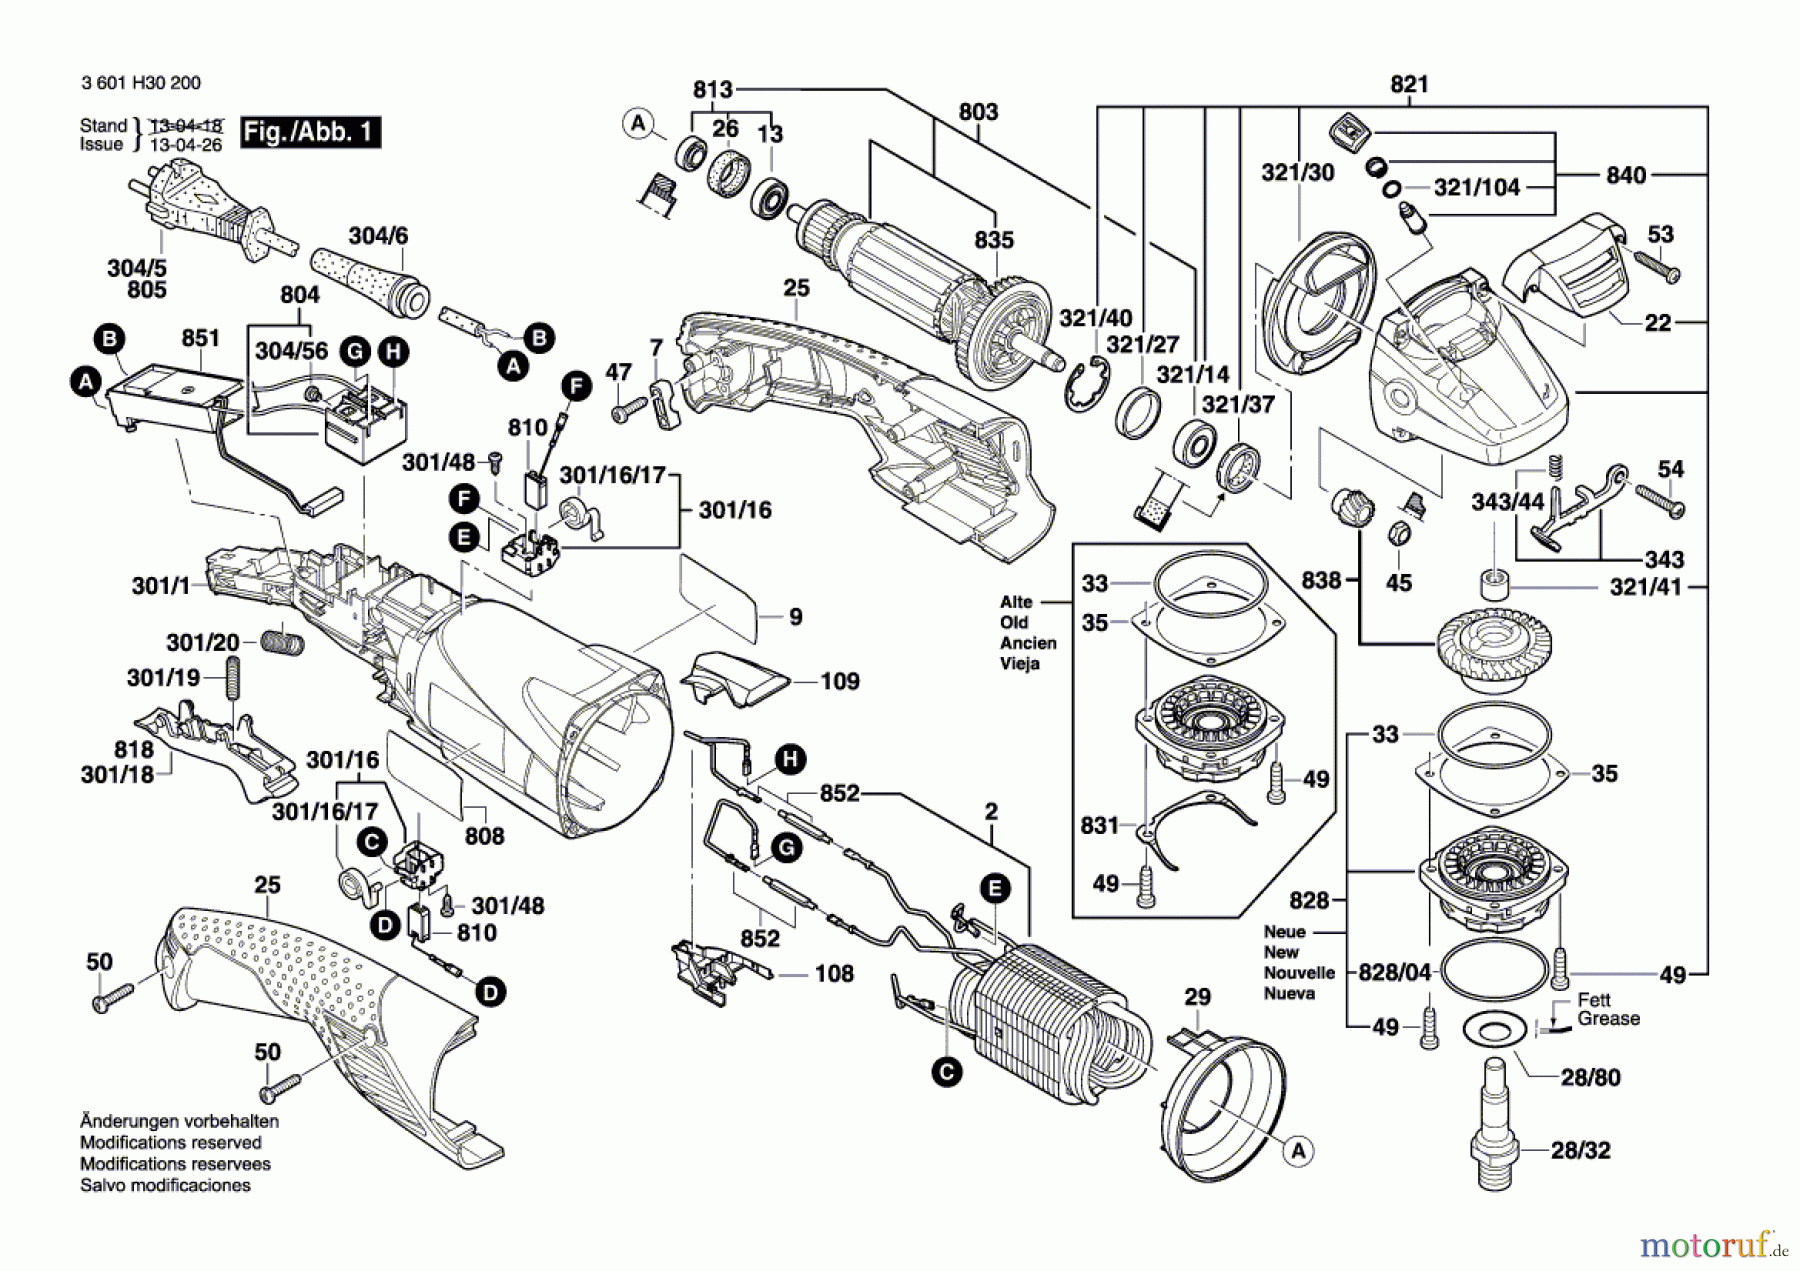  Bosch Werkzeug Winkelschleifer GWS 15-125 CIH Seite 1